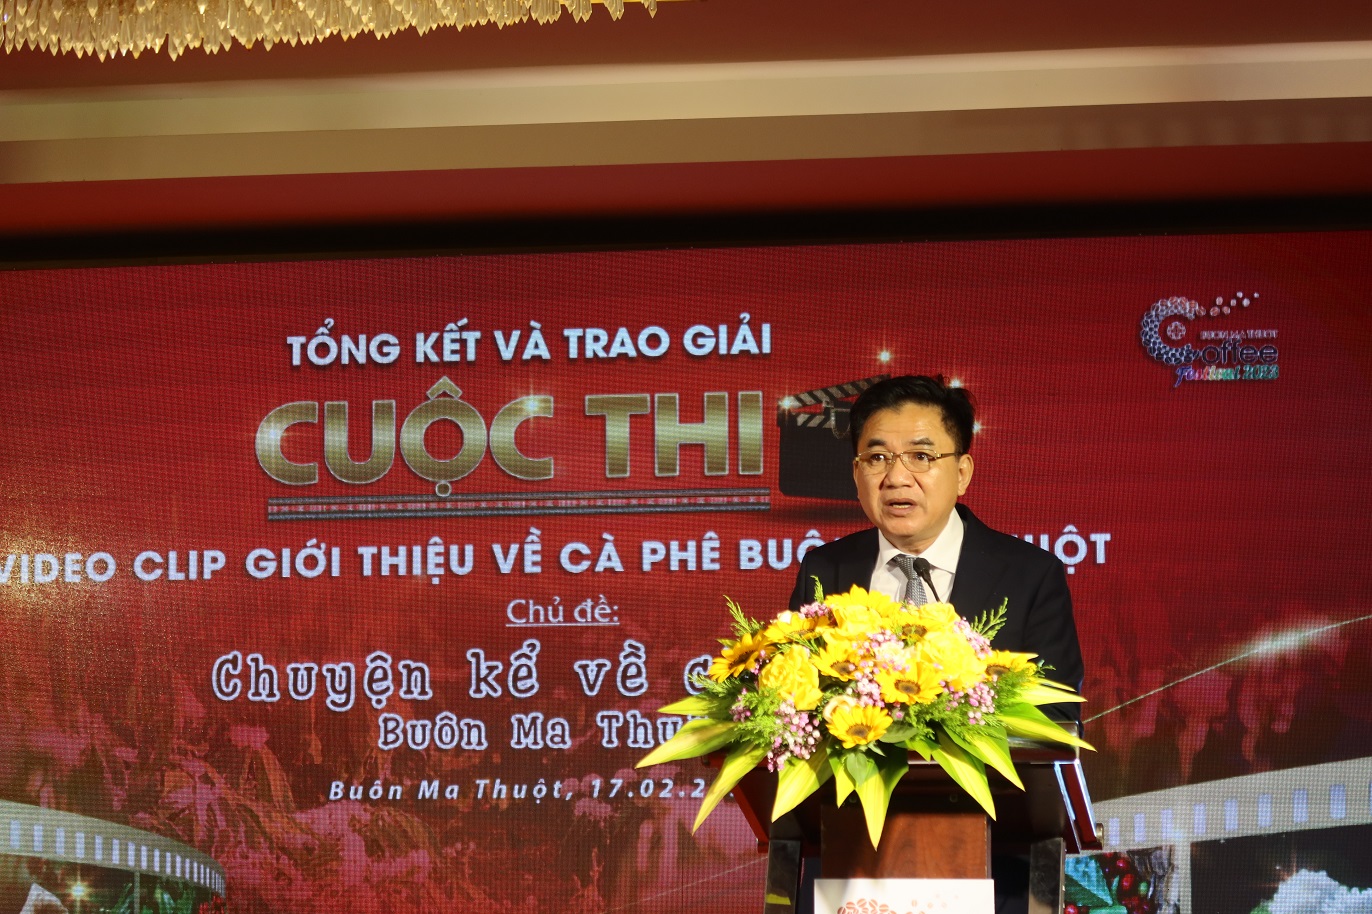 Giám đốc Sở Thông và Truyền thông Trương Hoài Anh nói về kết quả của cuộc thi video clip giới thiệu về Cà phê Buôn Ma Thuột